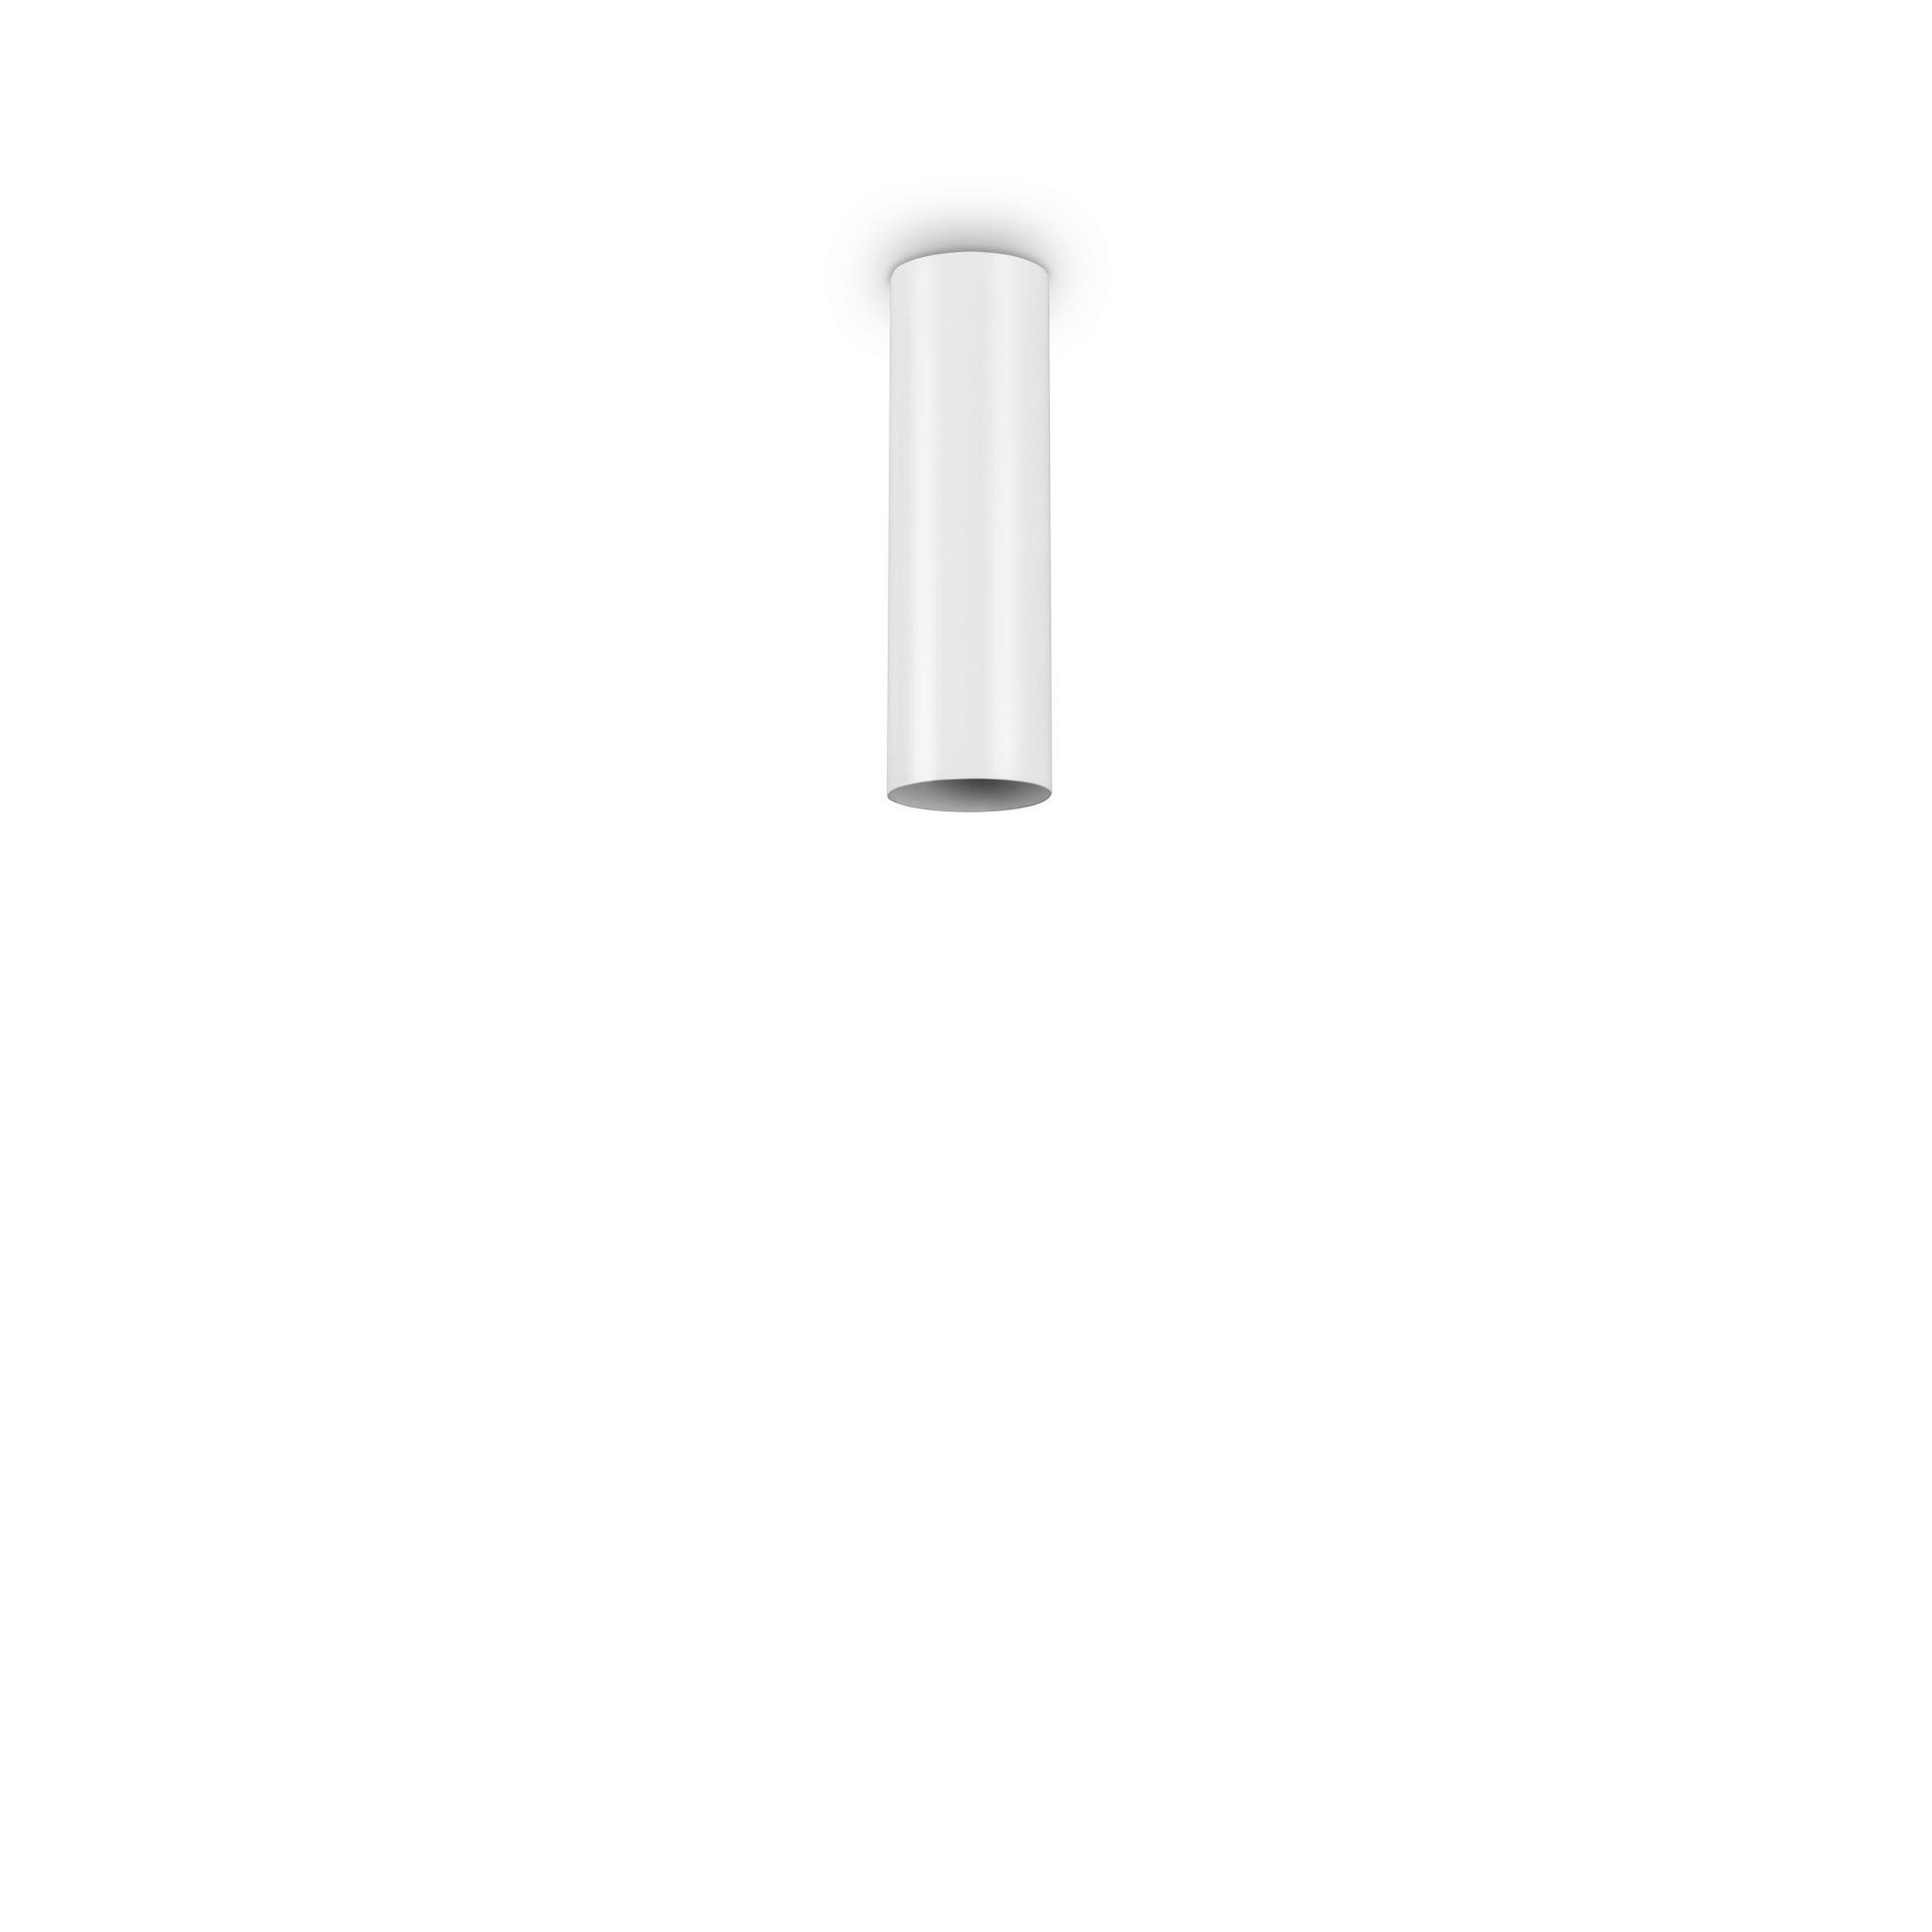 AUFBAULEUCHTE 6/20 cm   - Weiß, KONVENTIONELL, Metall (6/20cm)